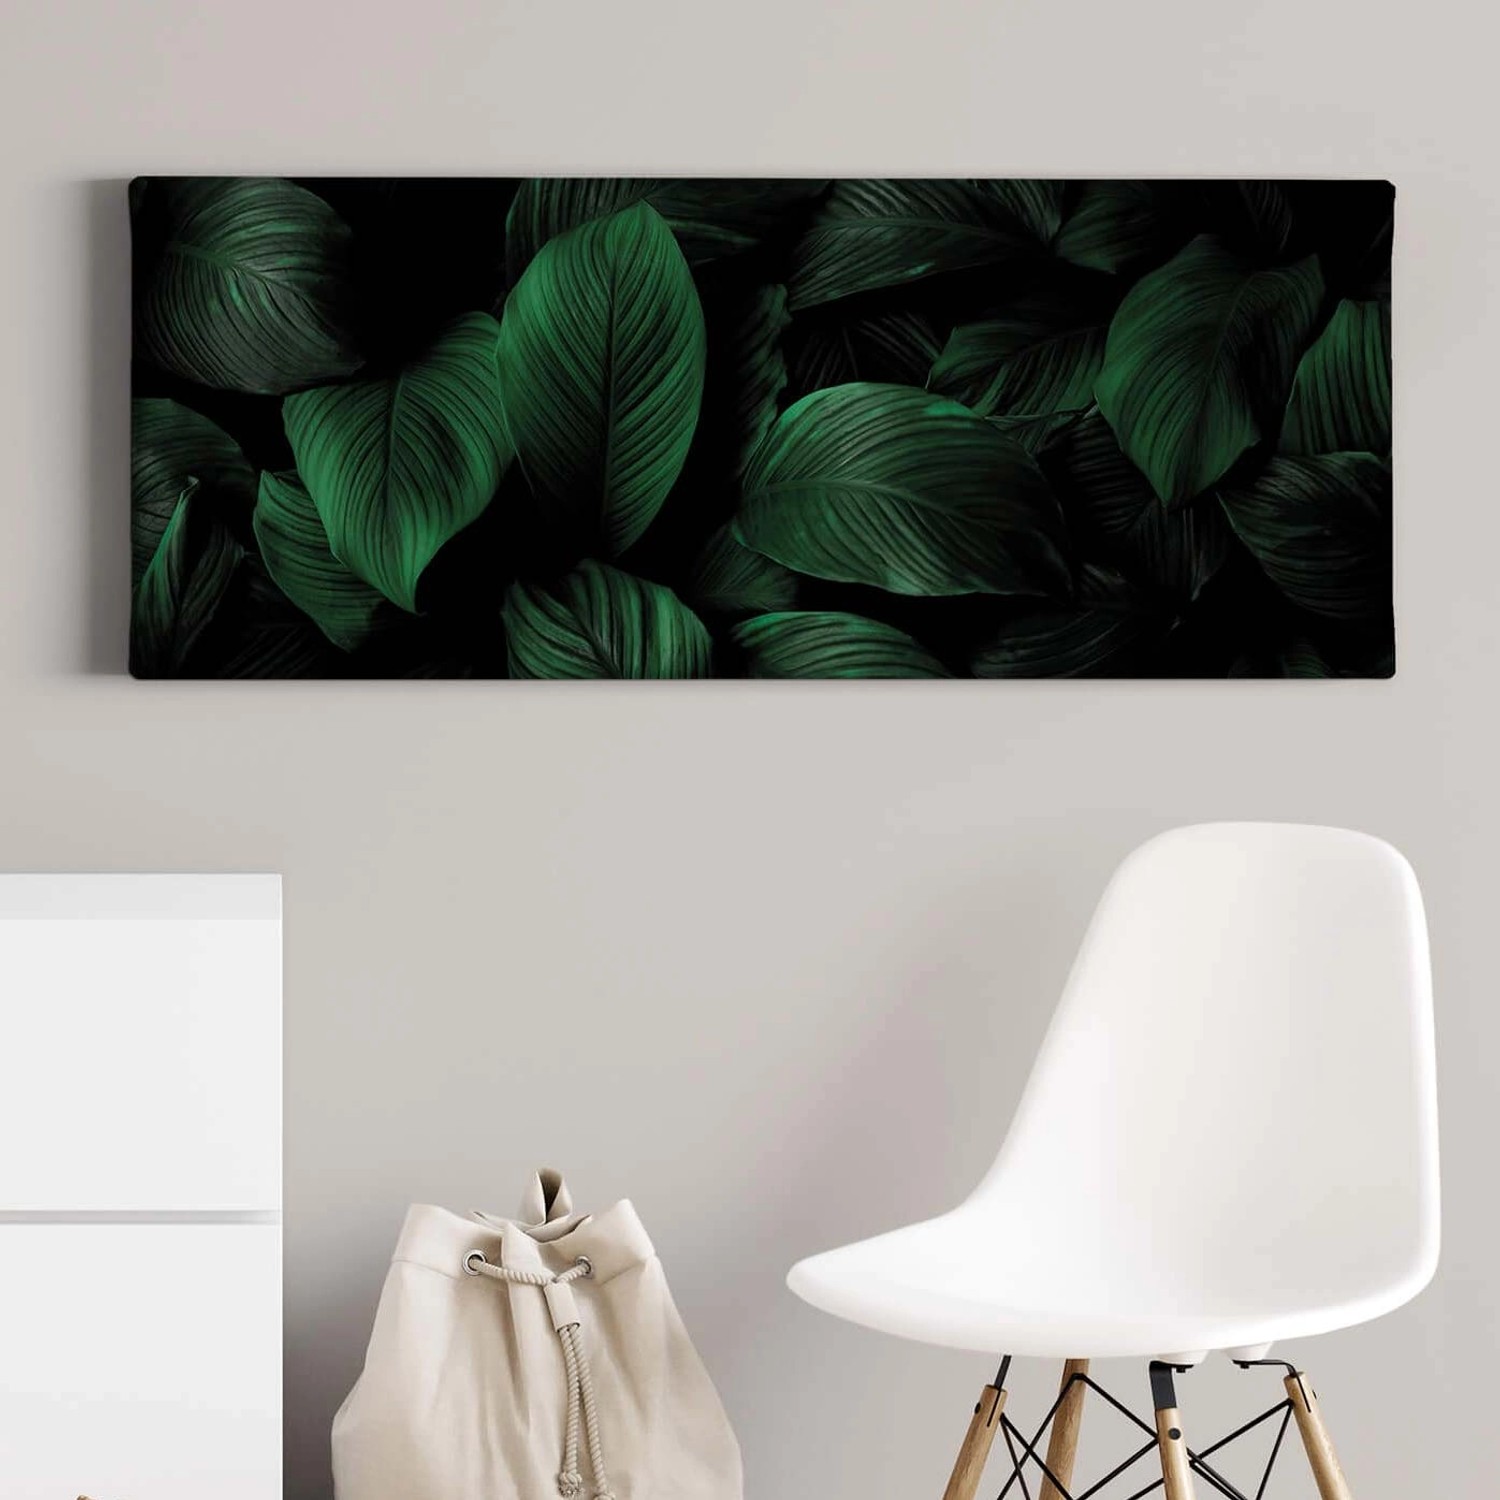 Bricoflor Bild Mit Grünen Blättern Auf Leinwand Dschungel Wandbild Mit Palmenblättern In Dunkelgrün Exostisches Leinwand